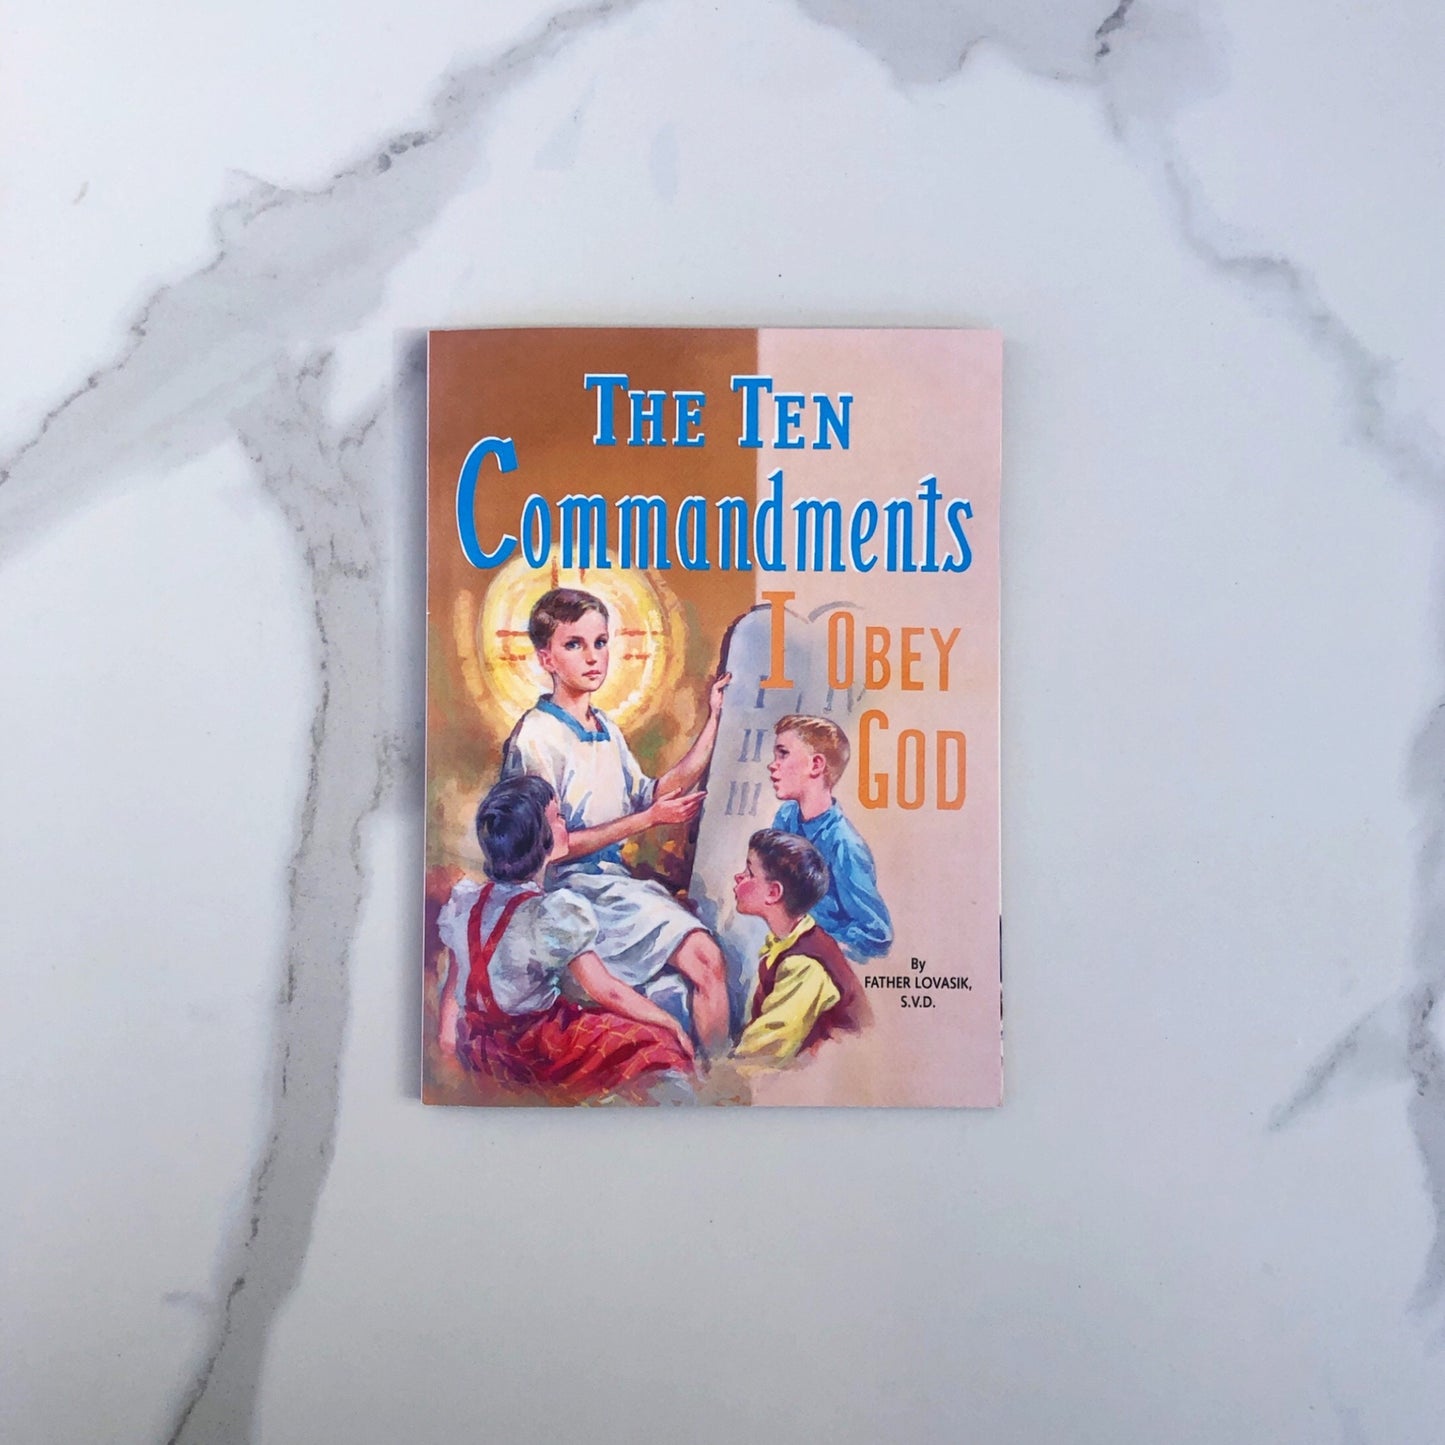 The Ten Commandments: I Obey God